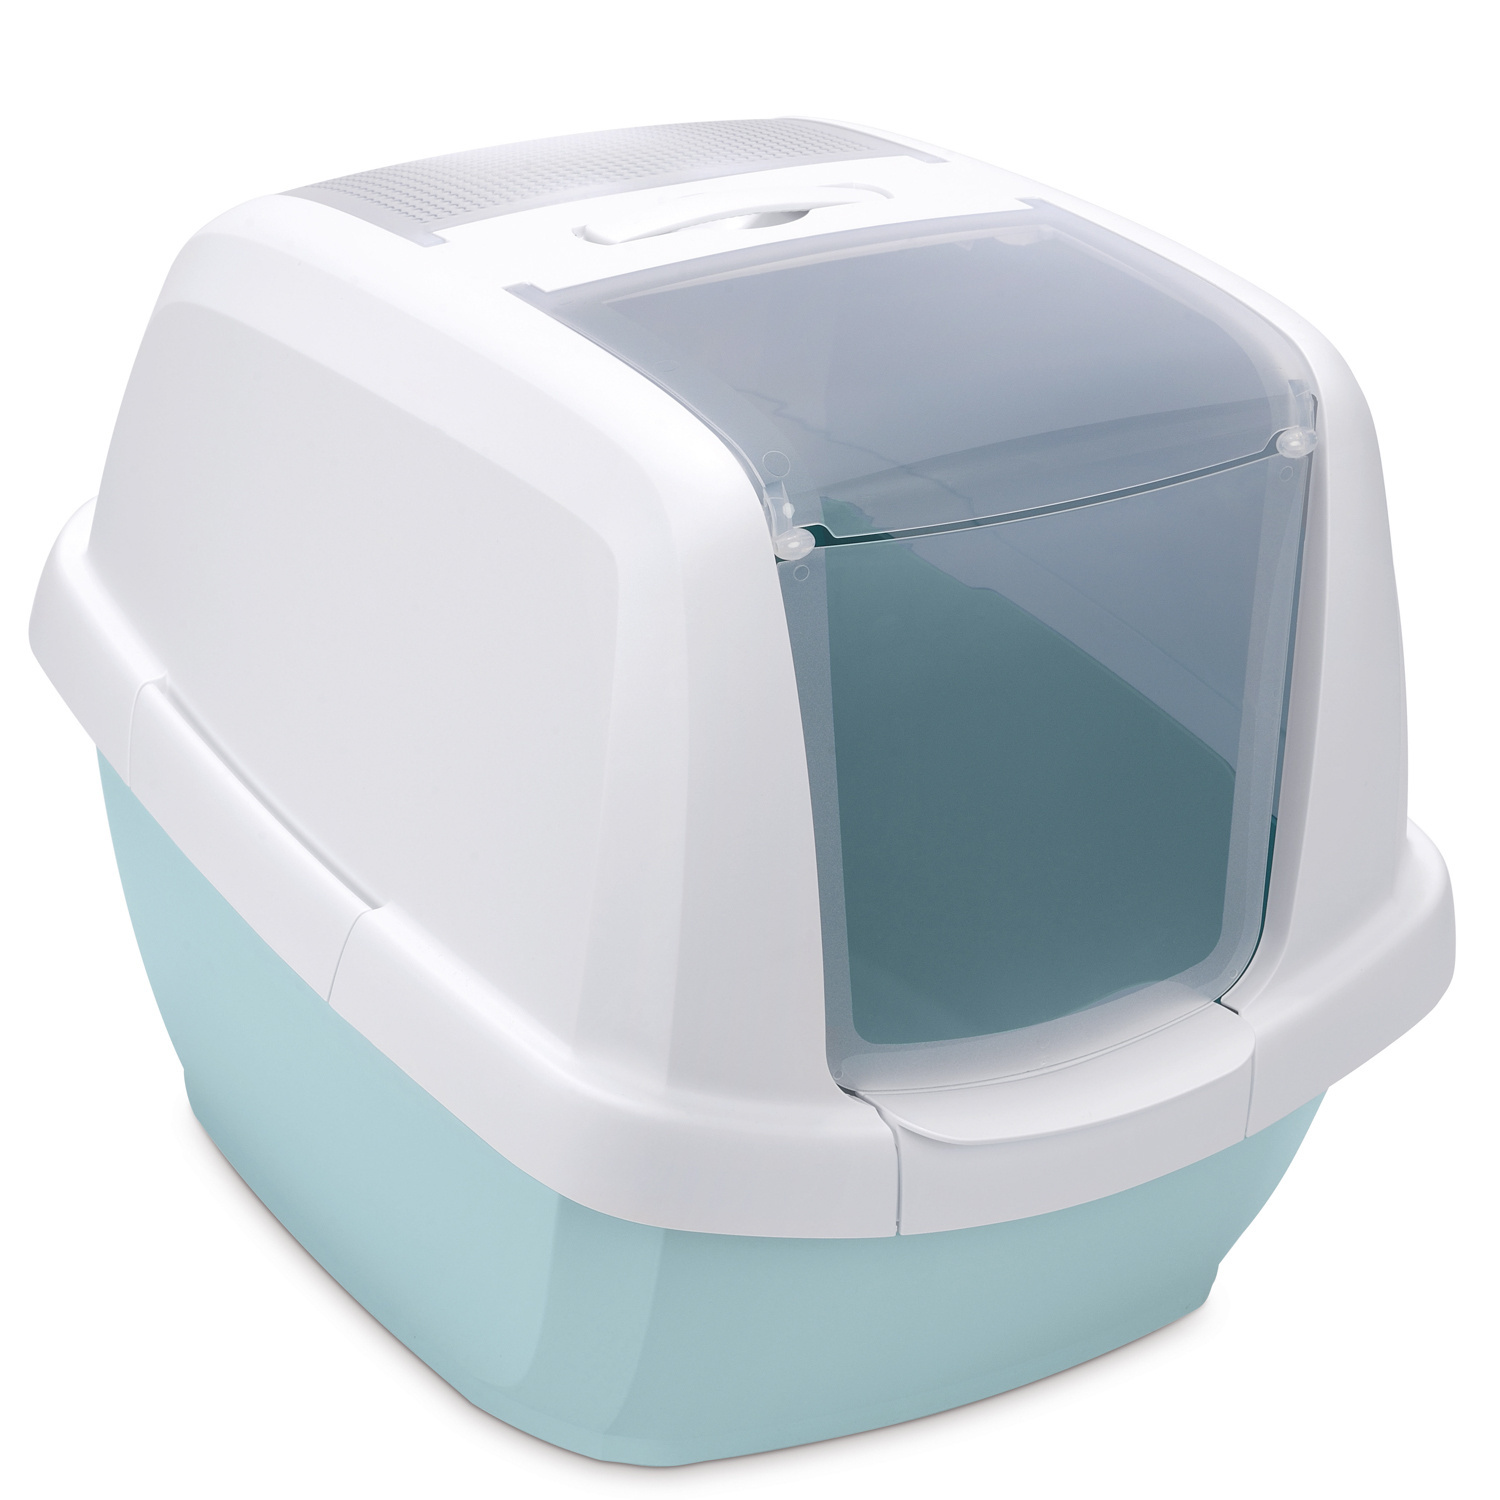 IMAC IMAC био-туалет для кошек , белый/цвет морской волны (2,85 кг) фото